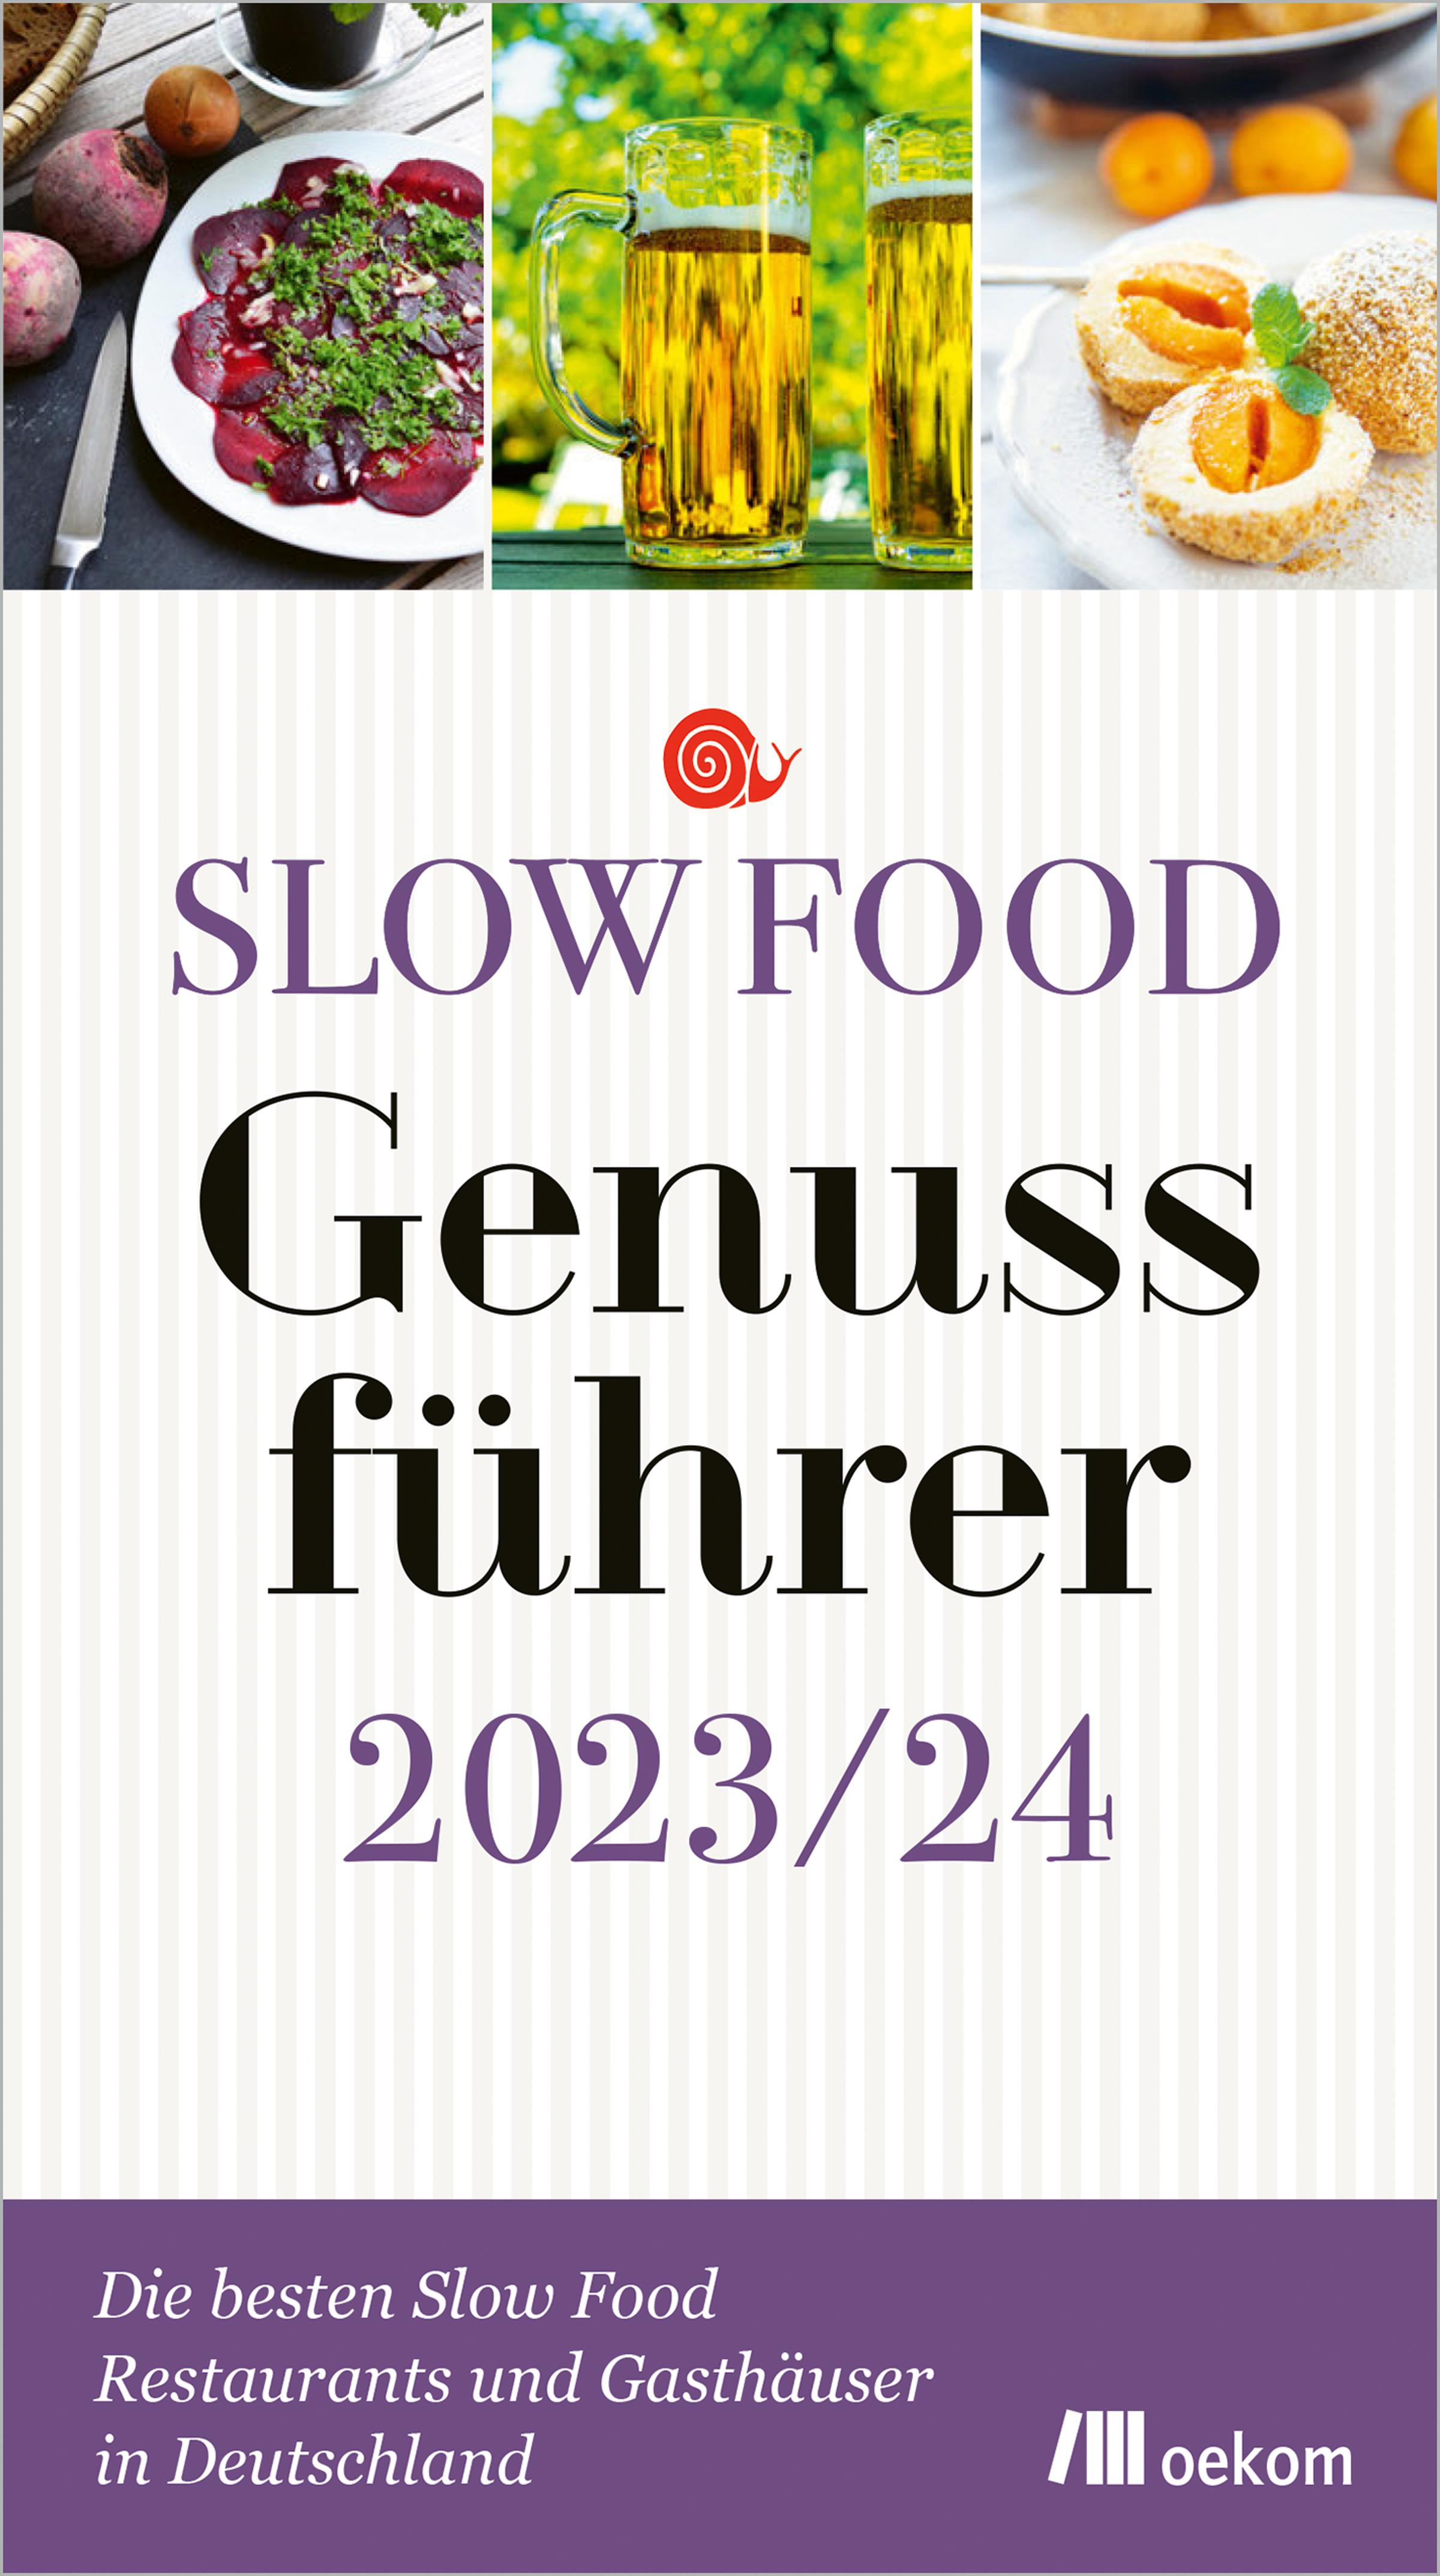 Slow Food Genussführer 2023/24 Die besten Slow Food Restaurants und Gasthäuser in Deutschland